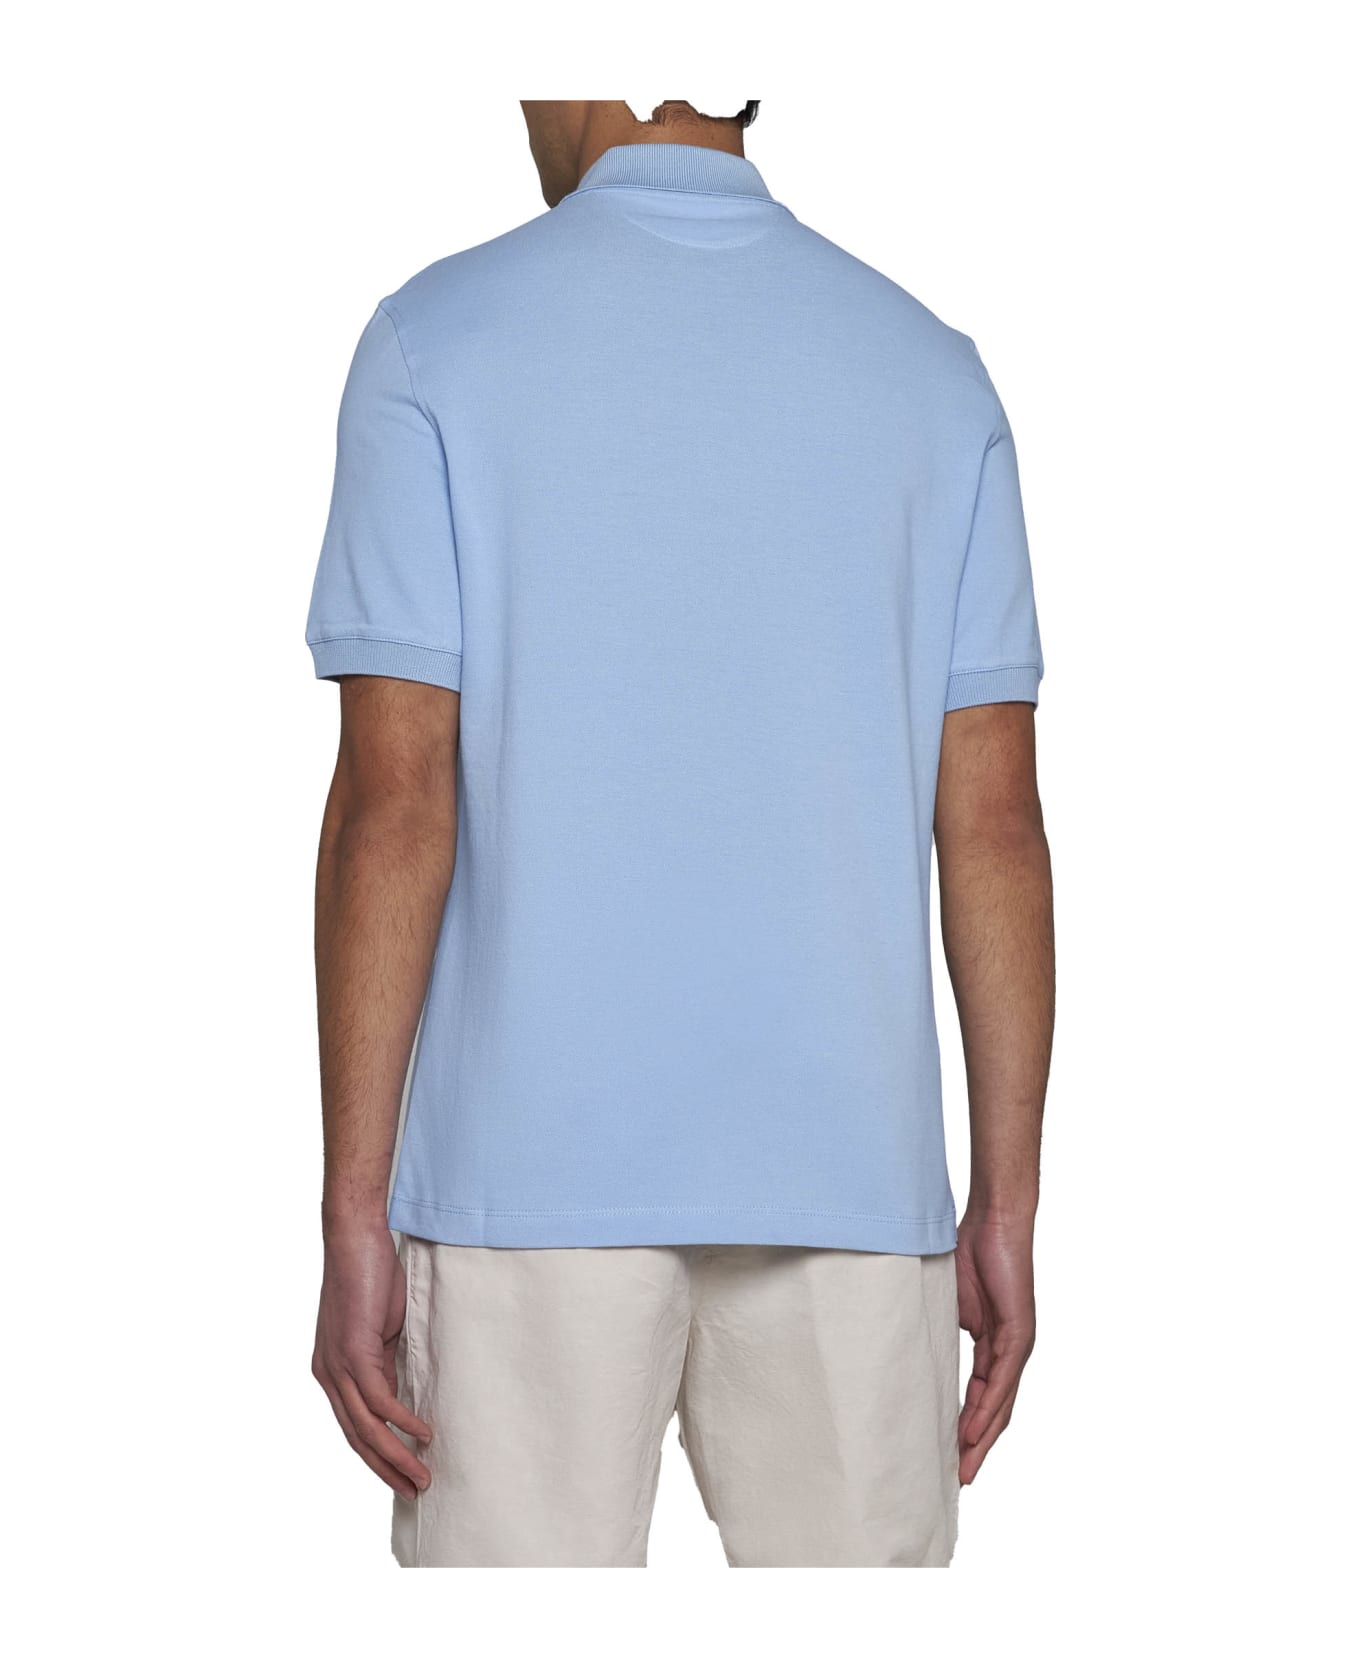 Brunello Cucinelli Logo Print Polo Shirt - Turchese + off white + perla ポロシャツ